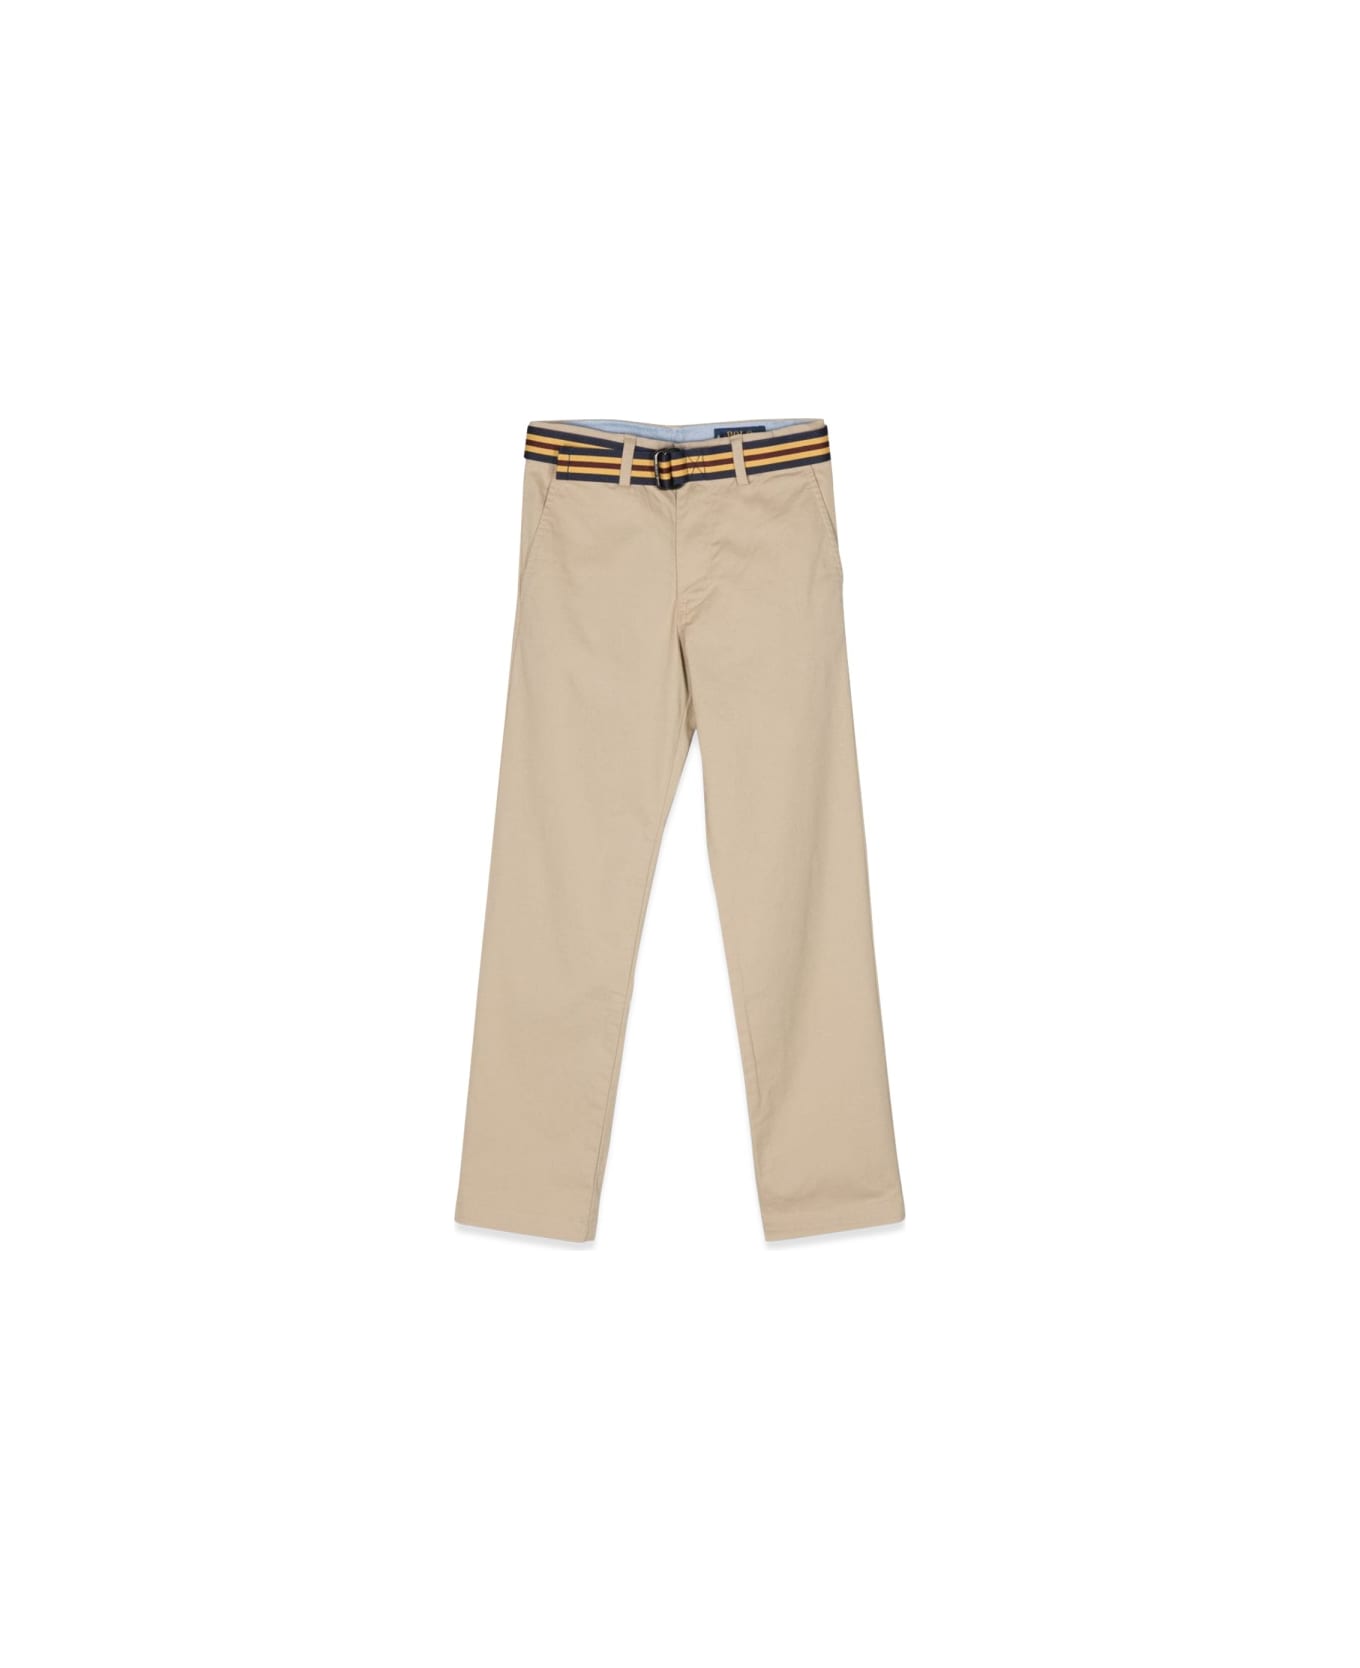 Polo Ralph Lauren Bedford Pants - BEIGE